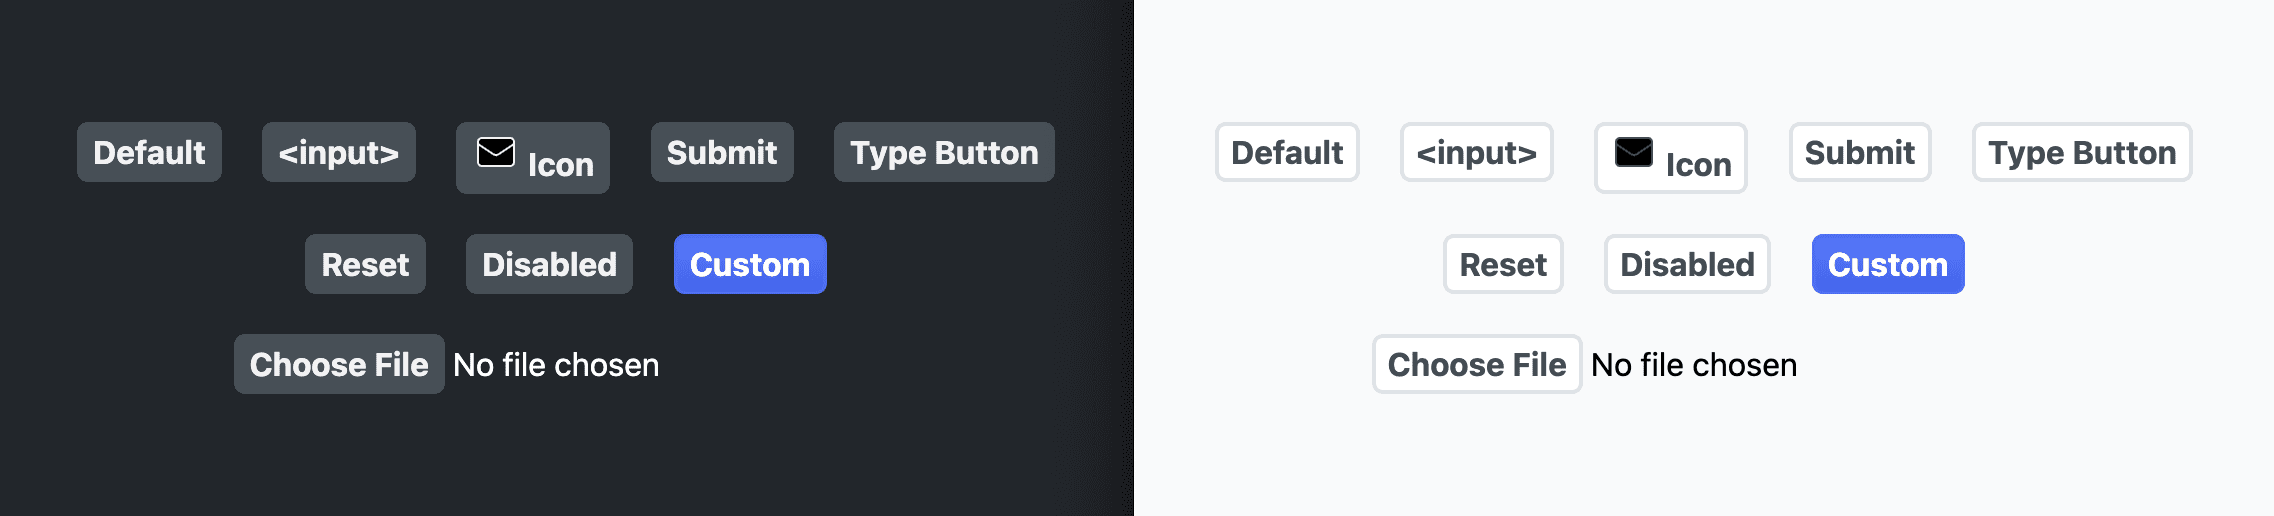 Captura de tela mostrando os botões após a aplicação dos estilos anteriores.